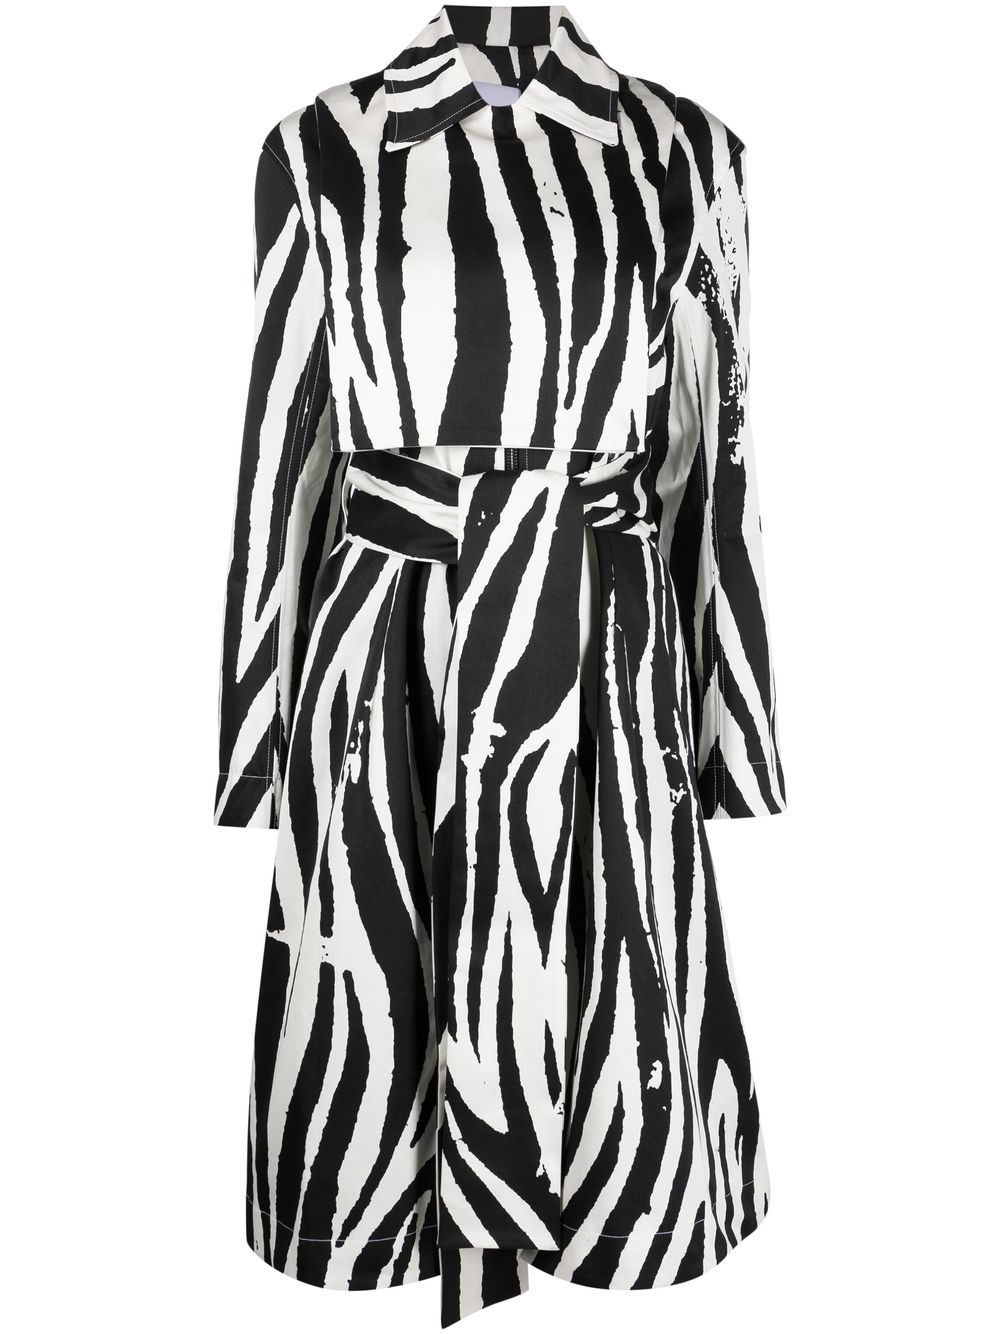 zebra-print zip-up trench coat